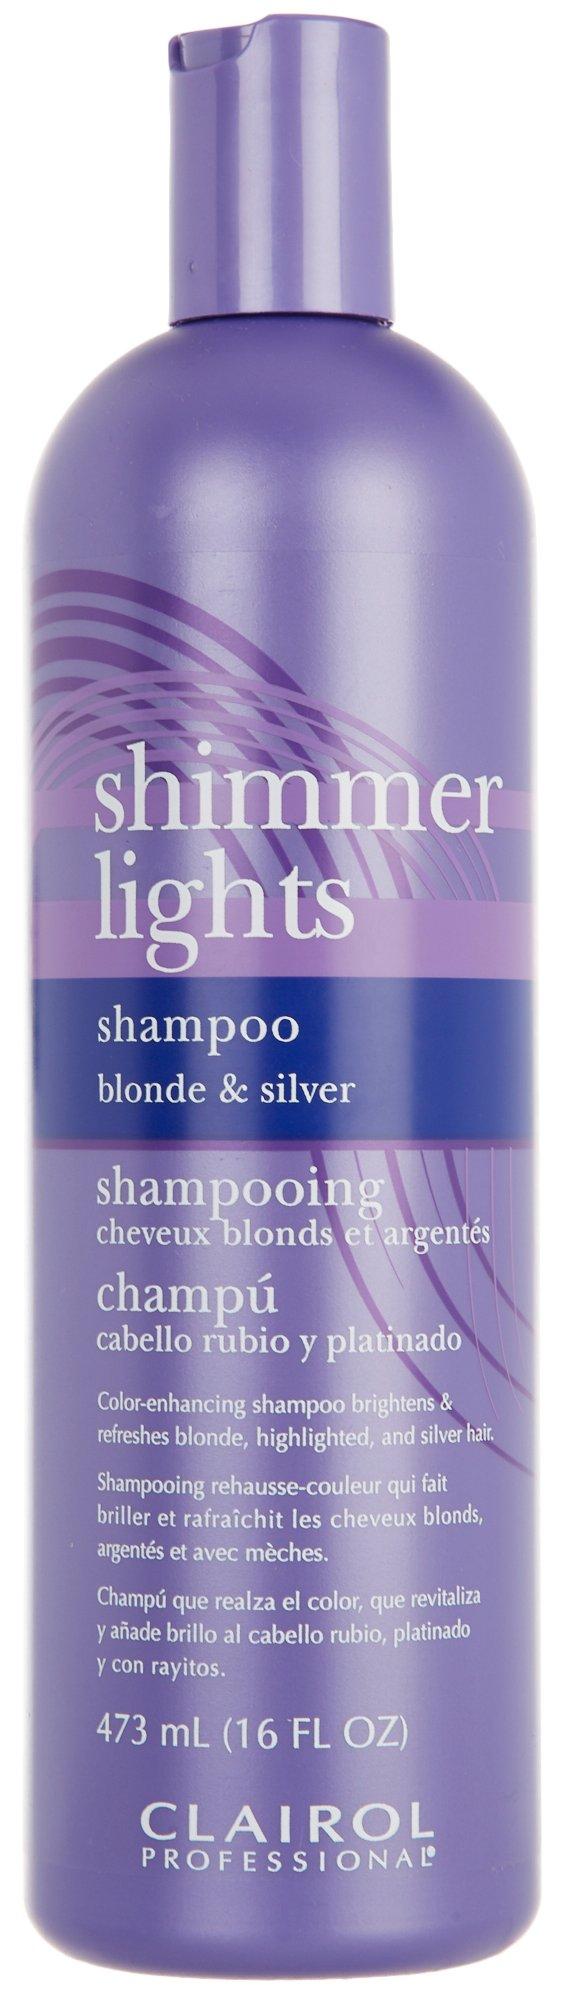 Shimmer Lights Blonde & Silver